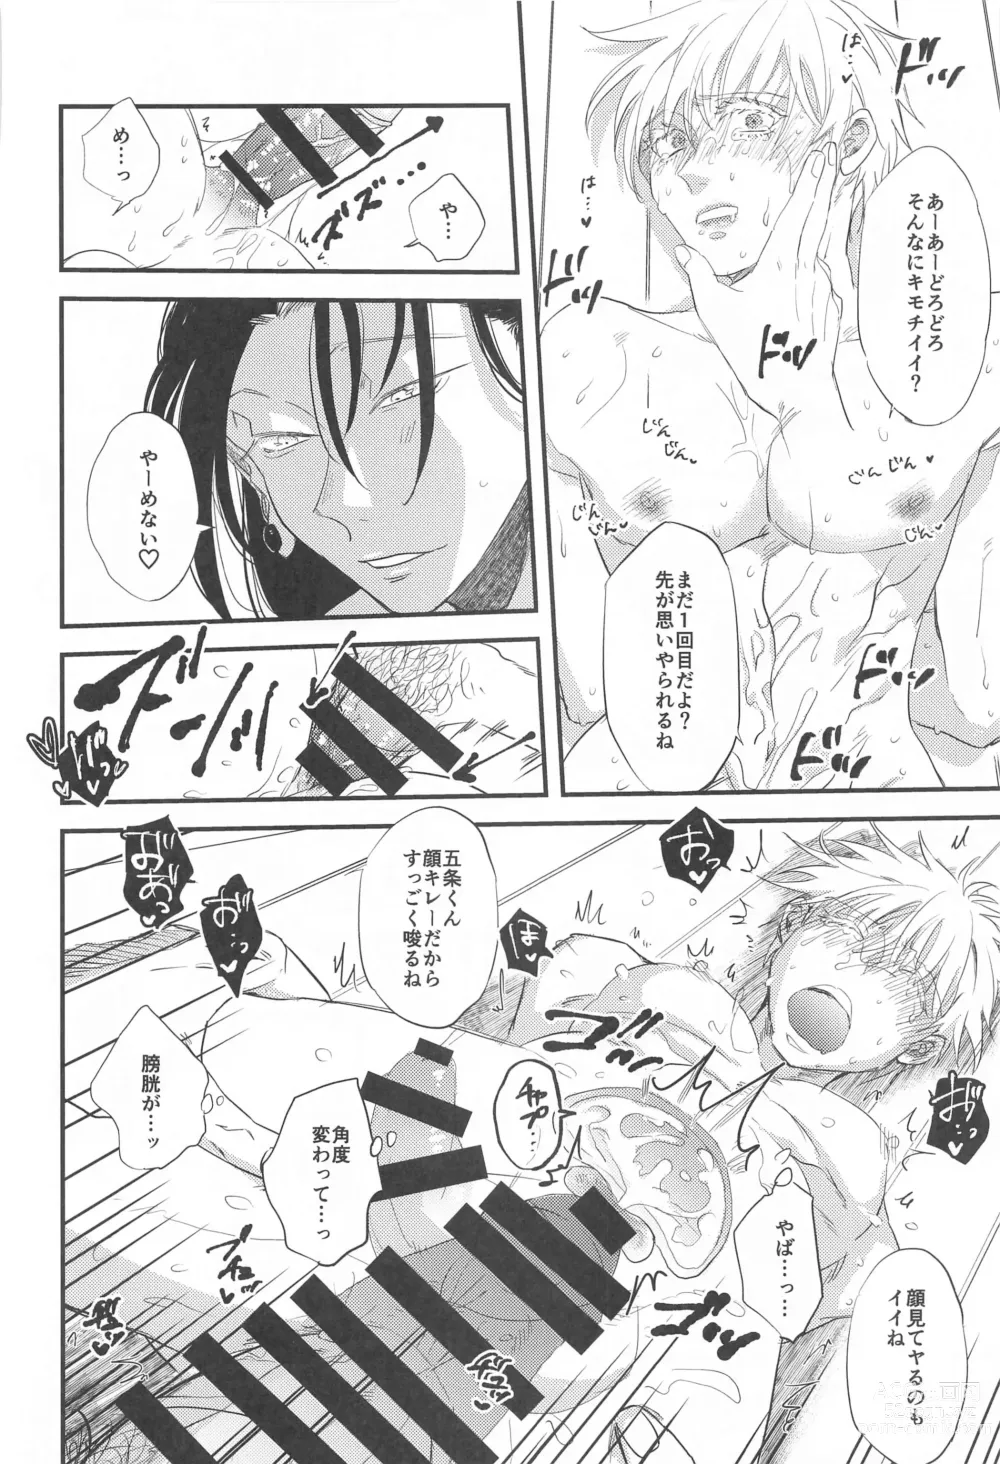 Page 27 of doujinshi Saikyou  x Kimeseku  x Sokuochi 2-koma